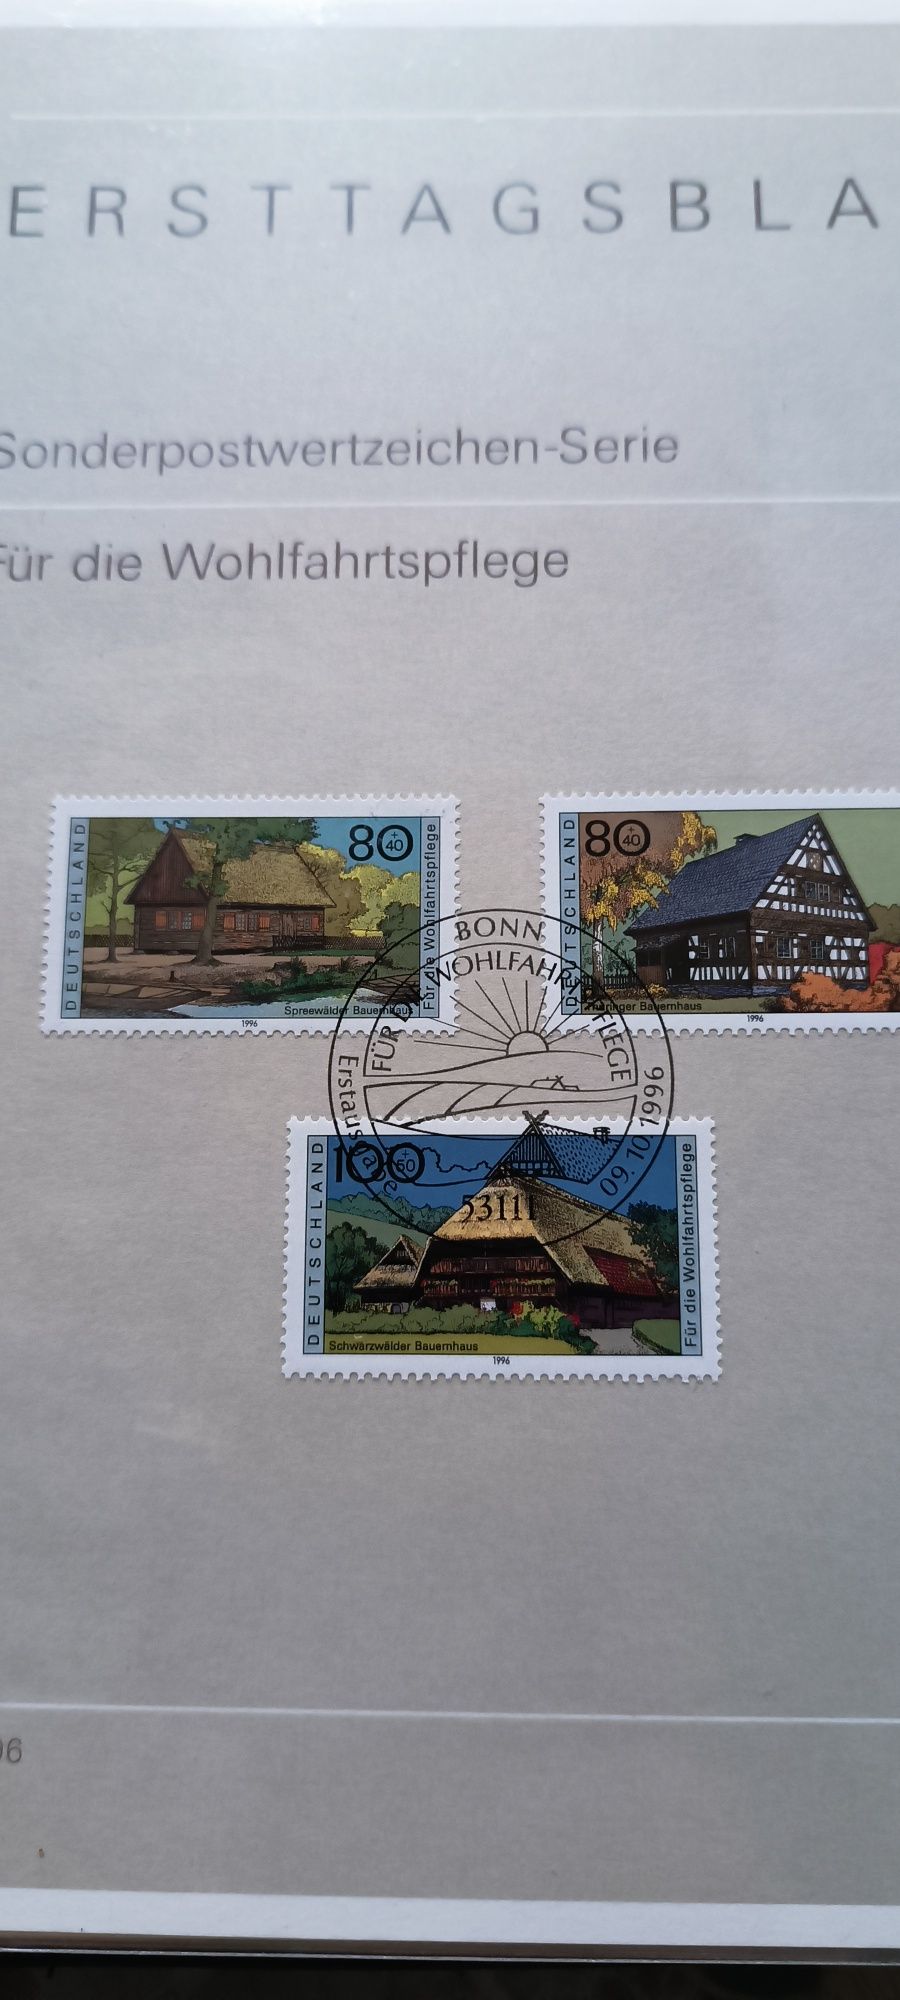 Набор марок с альбомом